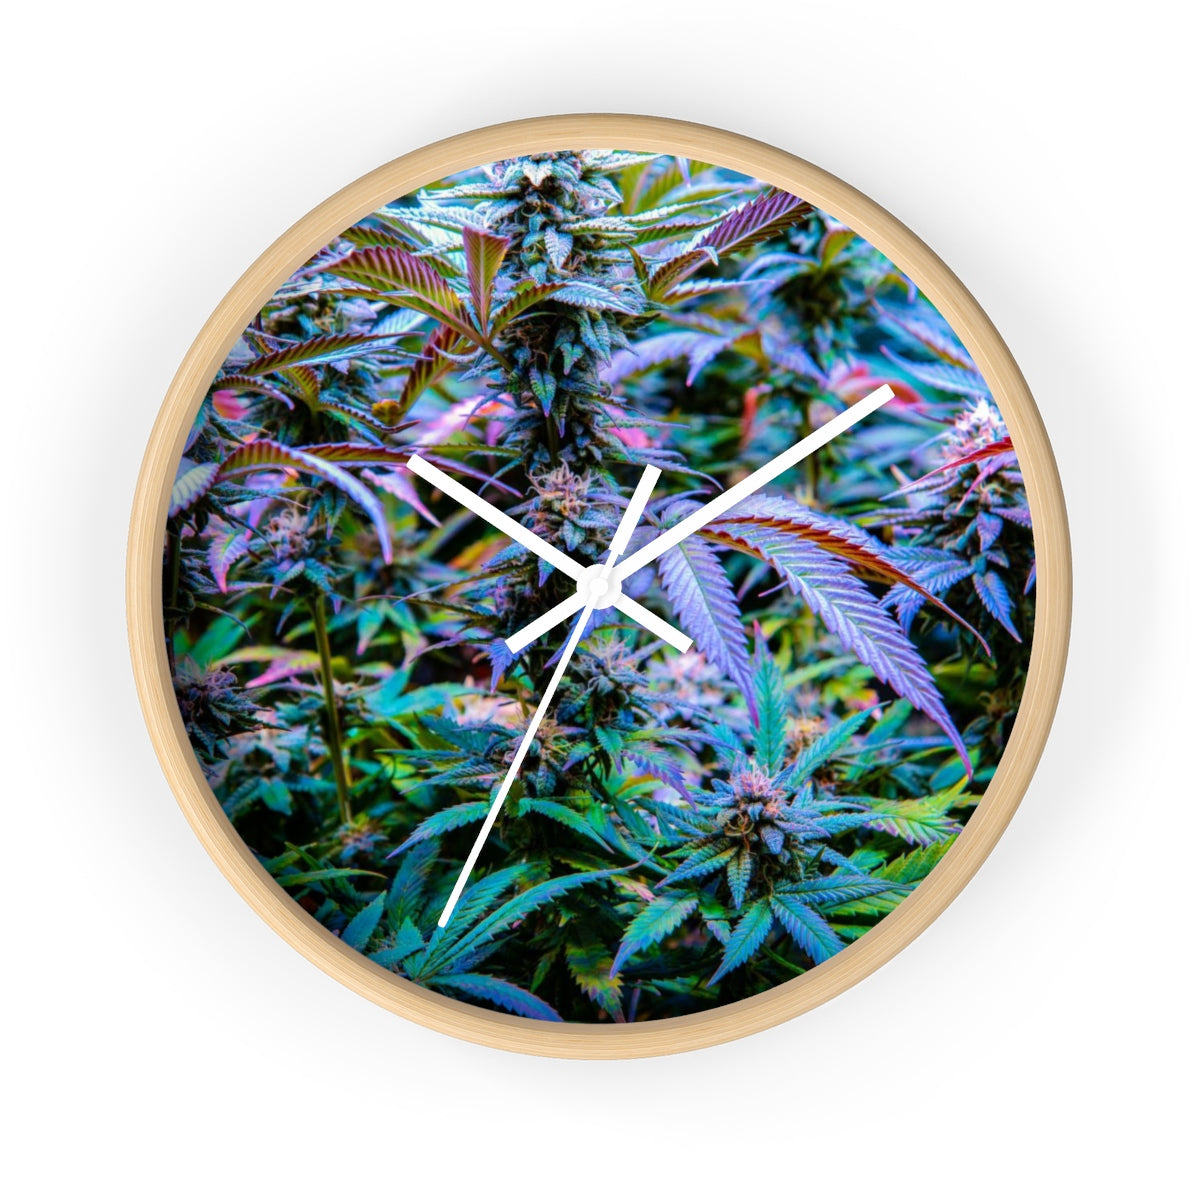 The Rainbow Cannabis Wall Clock